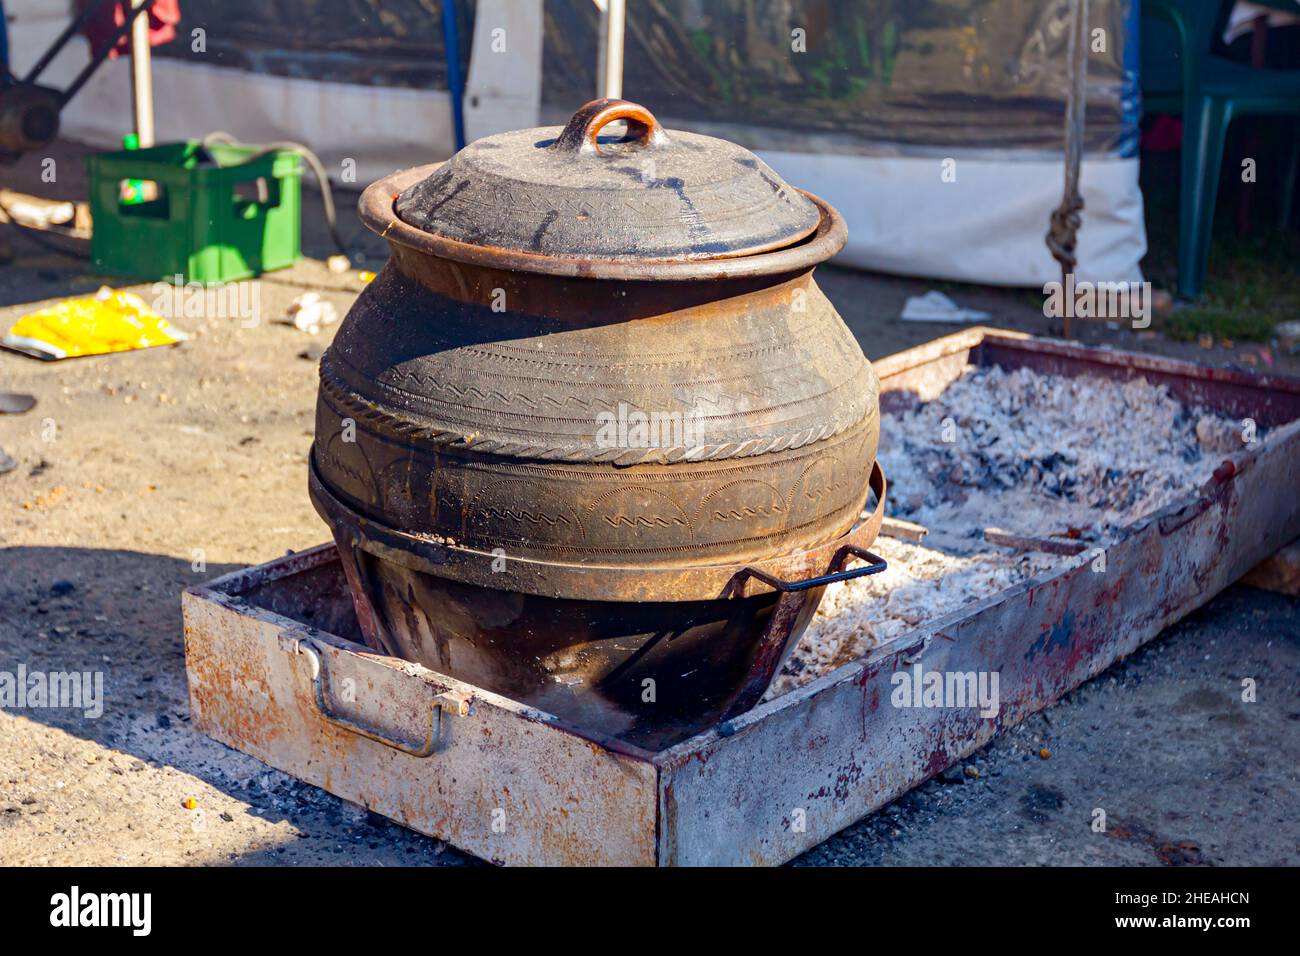 Große Mengen an Essen kochen in einer großen Keramik, Tontöpfe auf Glut  Stockfotografie - Alamy